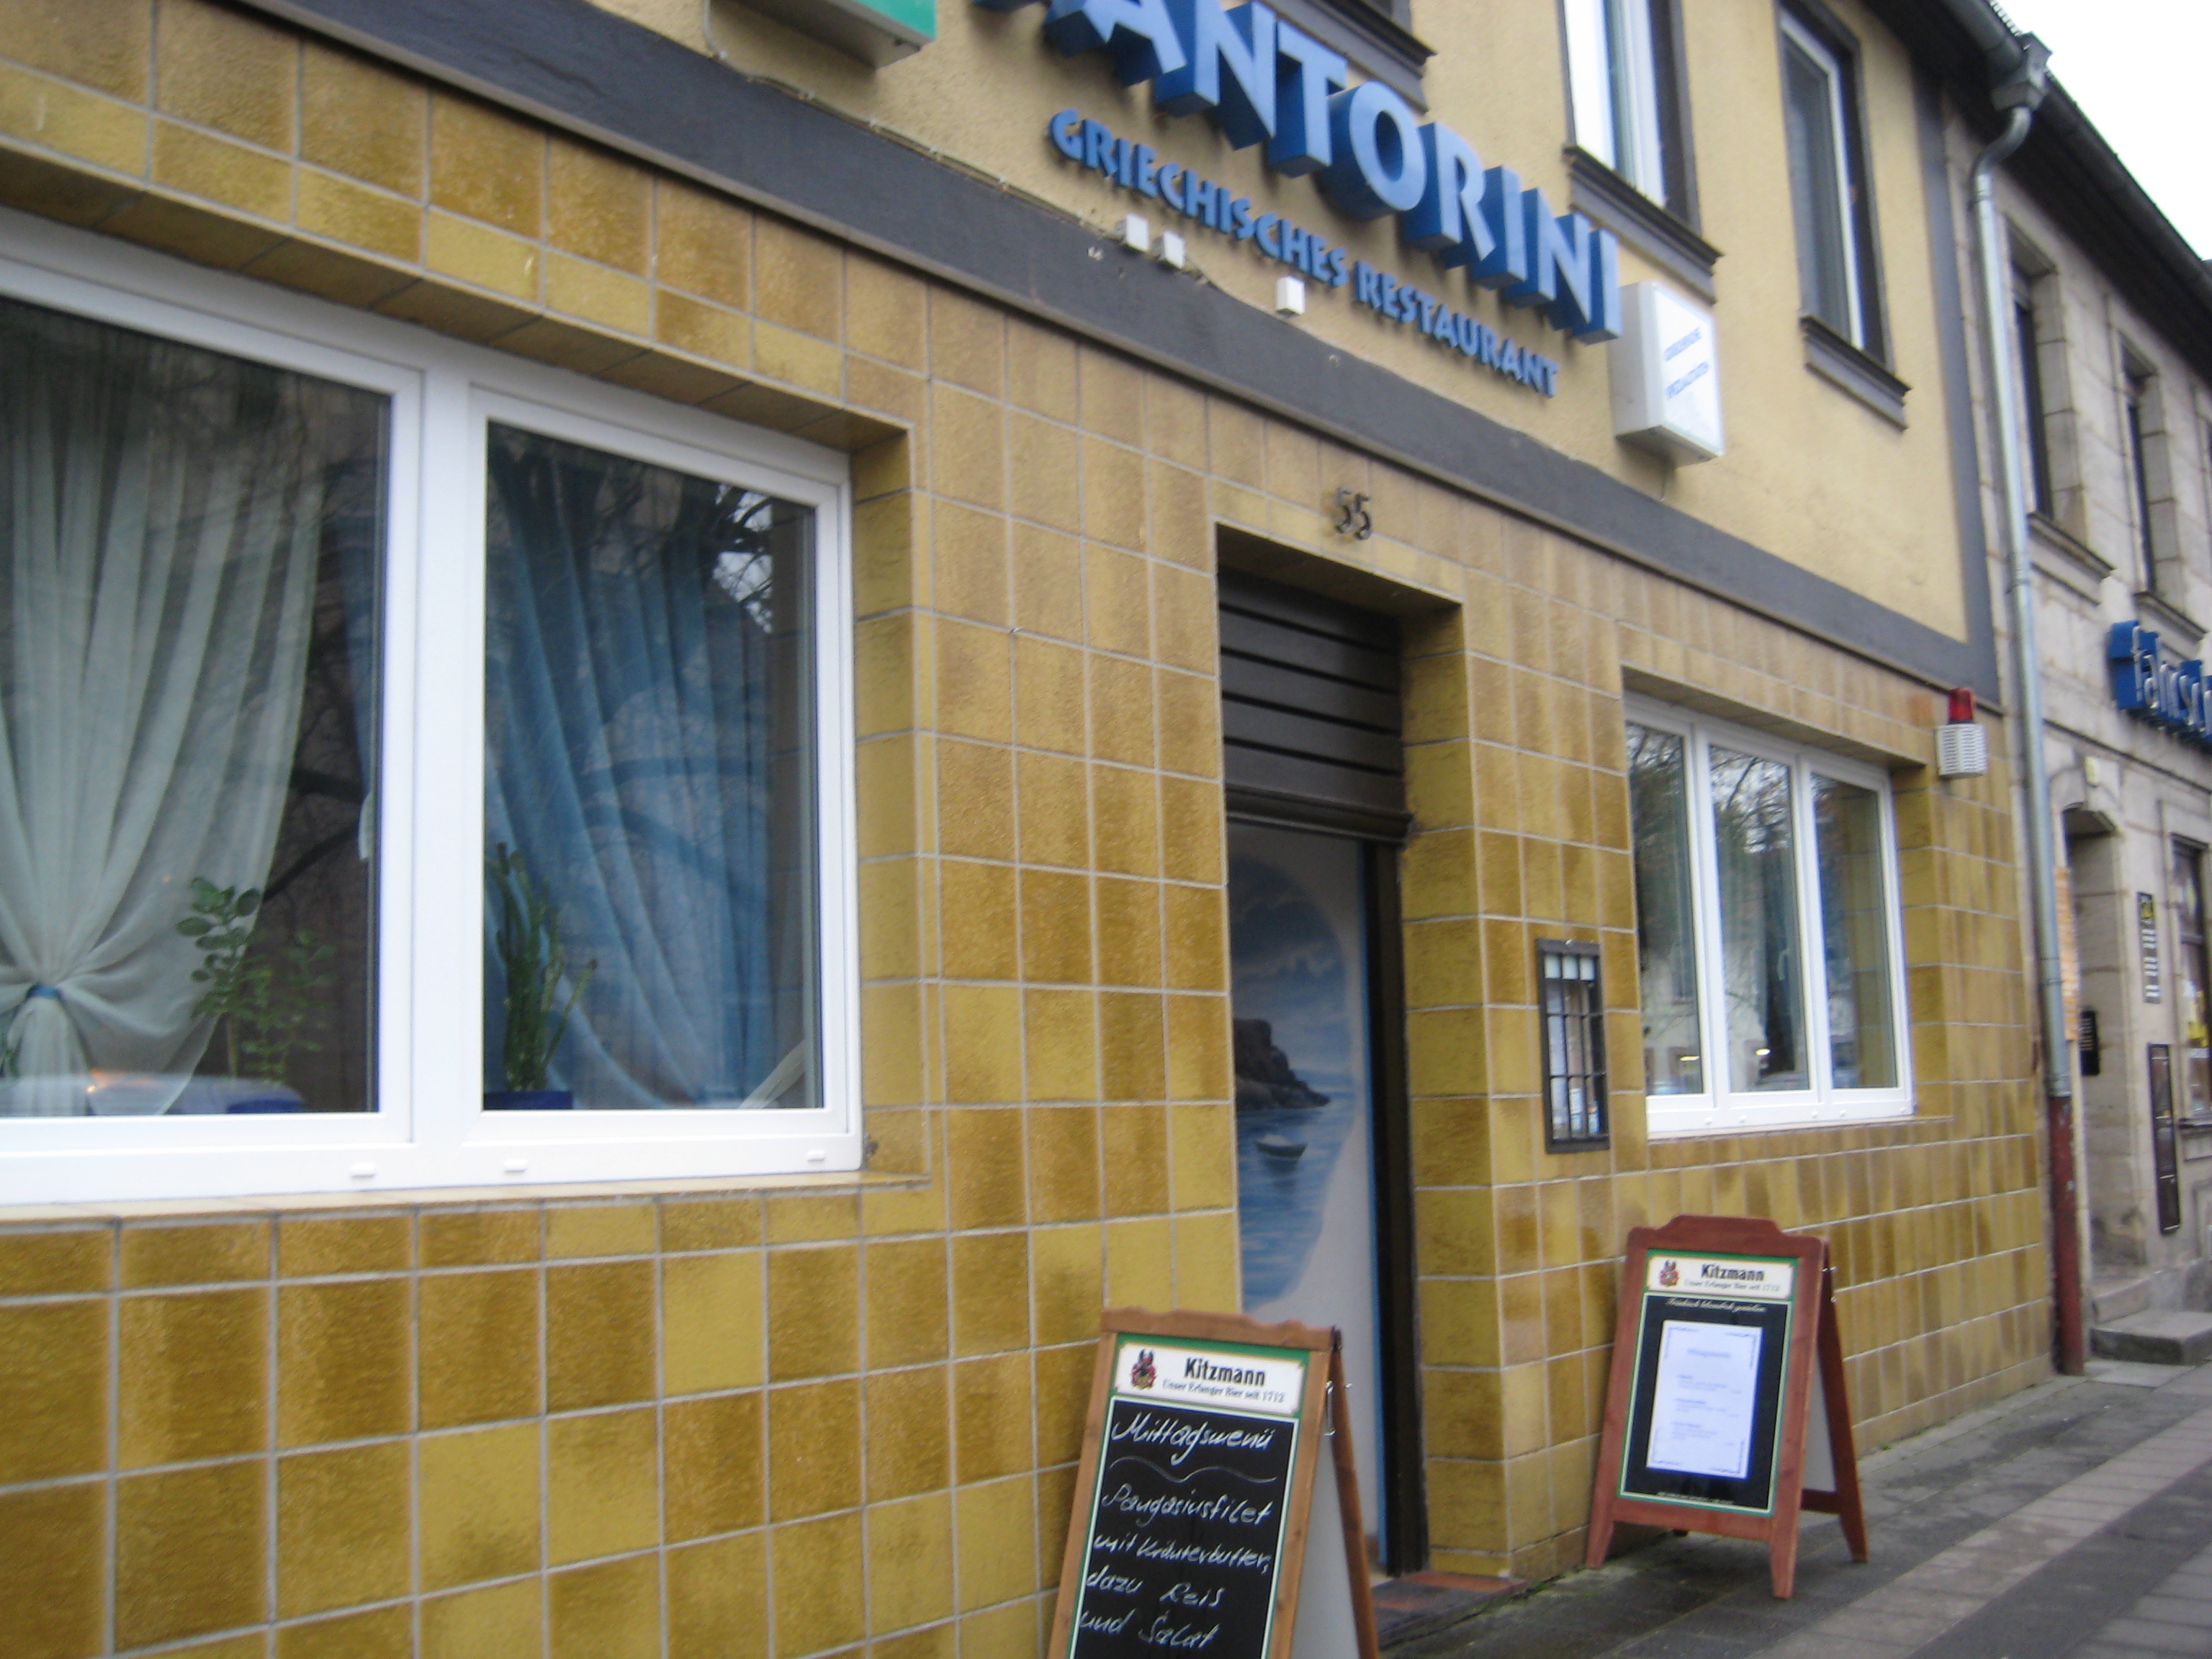 Bild 1 Restaurant Santorini in Erlangen